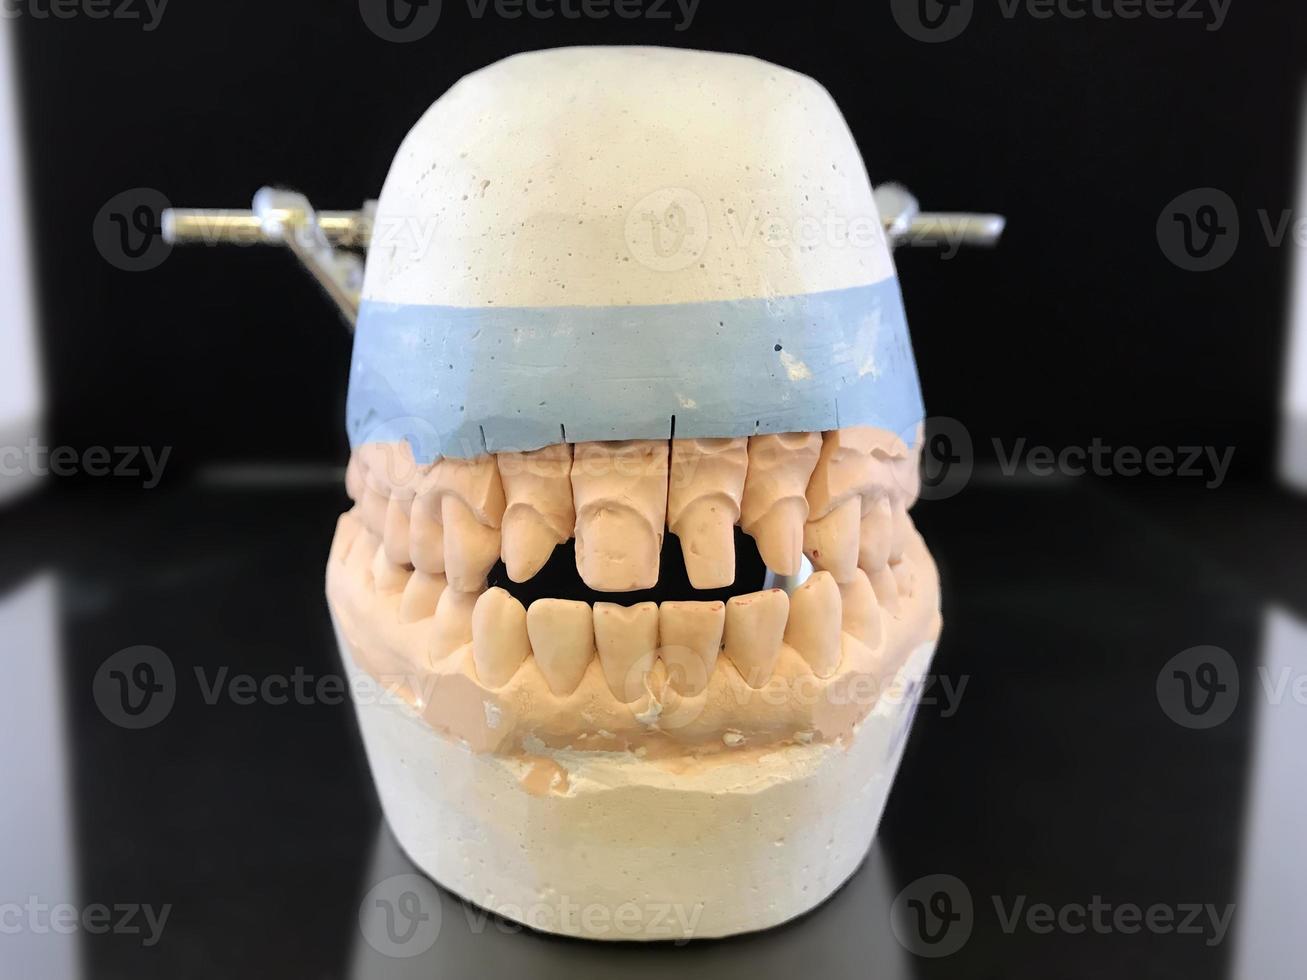 modelo de gesso dentario desmontável no oclusor do maxilar superior e inferior de pessoa para confecção de coroas cerâmicas. laboratório dentário, clínica. prótese dentária foto